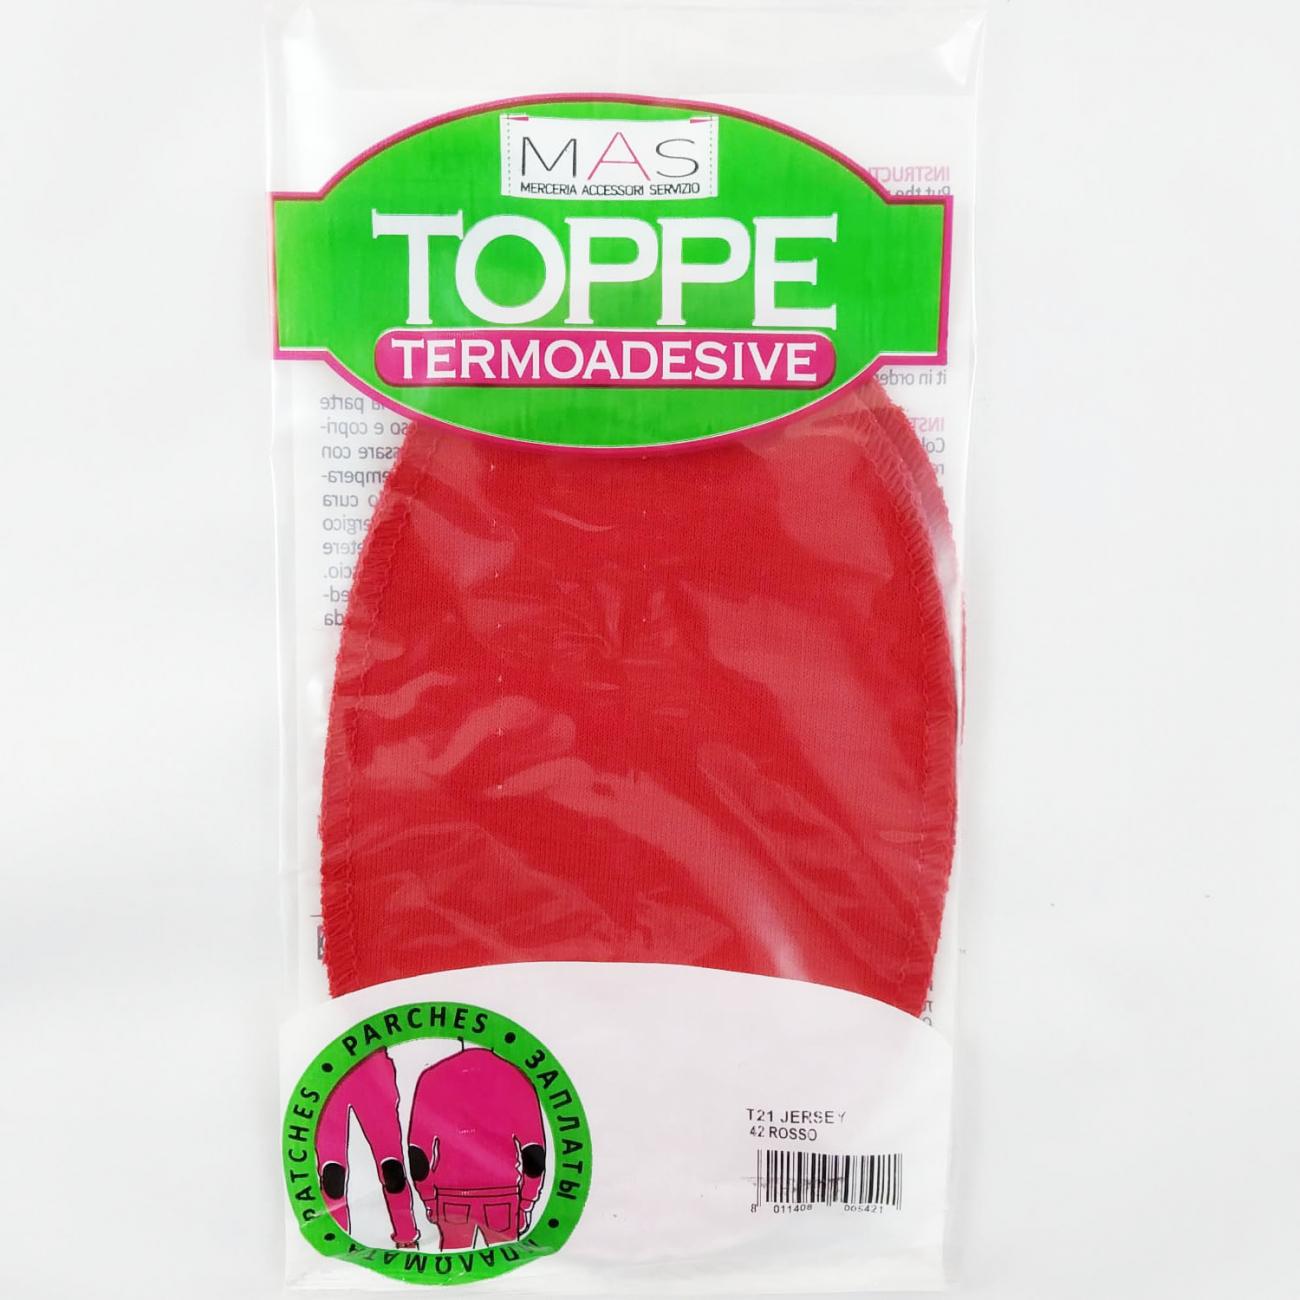 Toppe Termoadesive Multifibra - Rosso da Marbet Due - Toppe